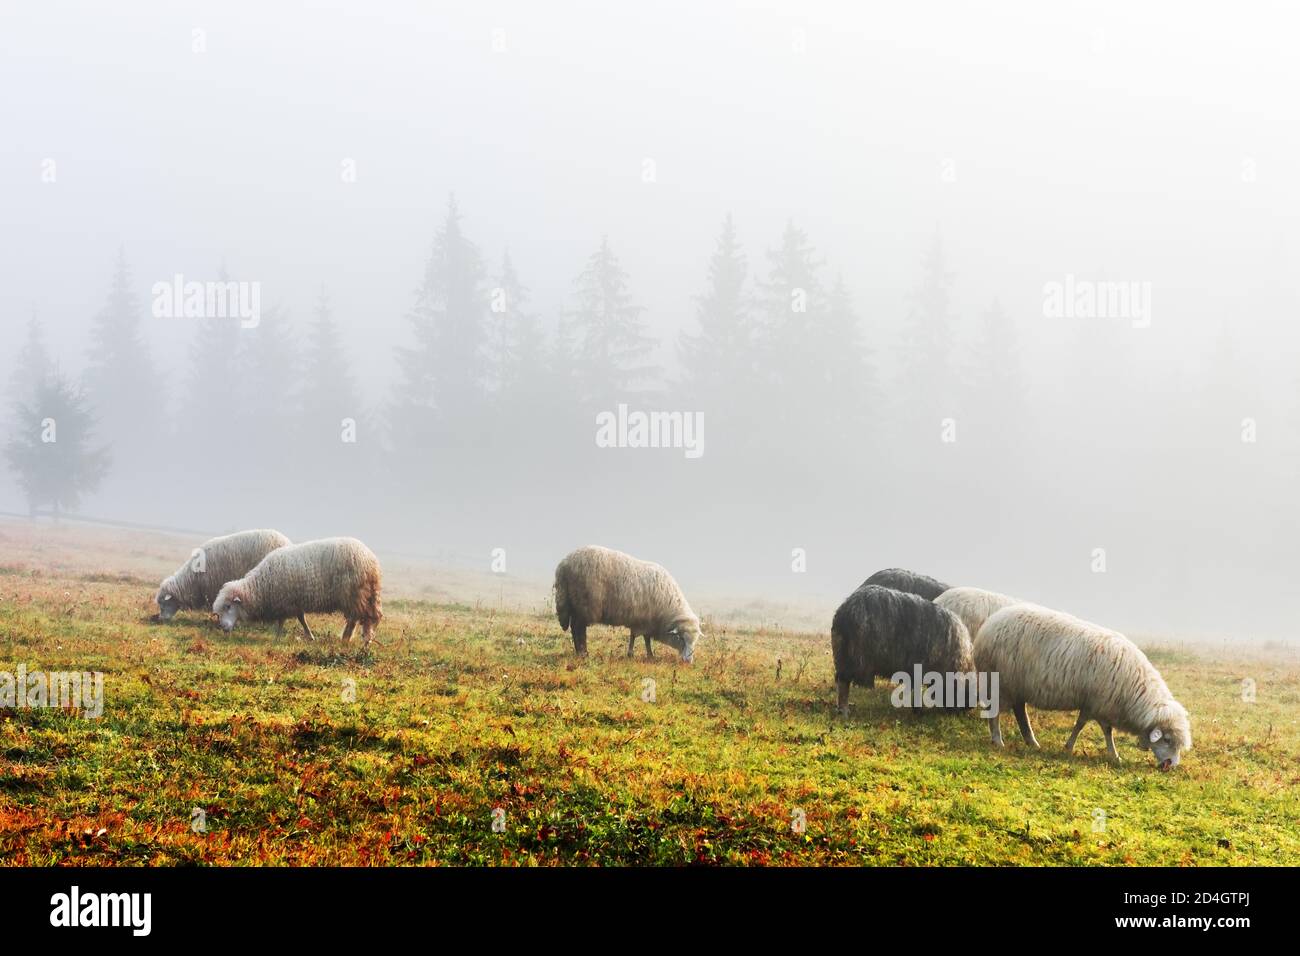 Troupeau de moutons dans les montagnes brumeuses d'automne. Forêt de pins en arrière-plan. Carpates, Ukraine, Europe. Photographie de paysage Banque D'Images